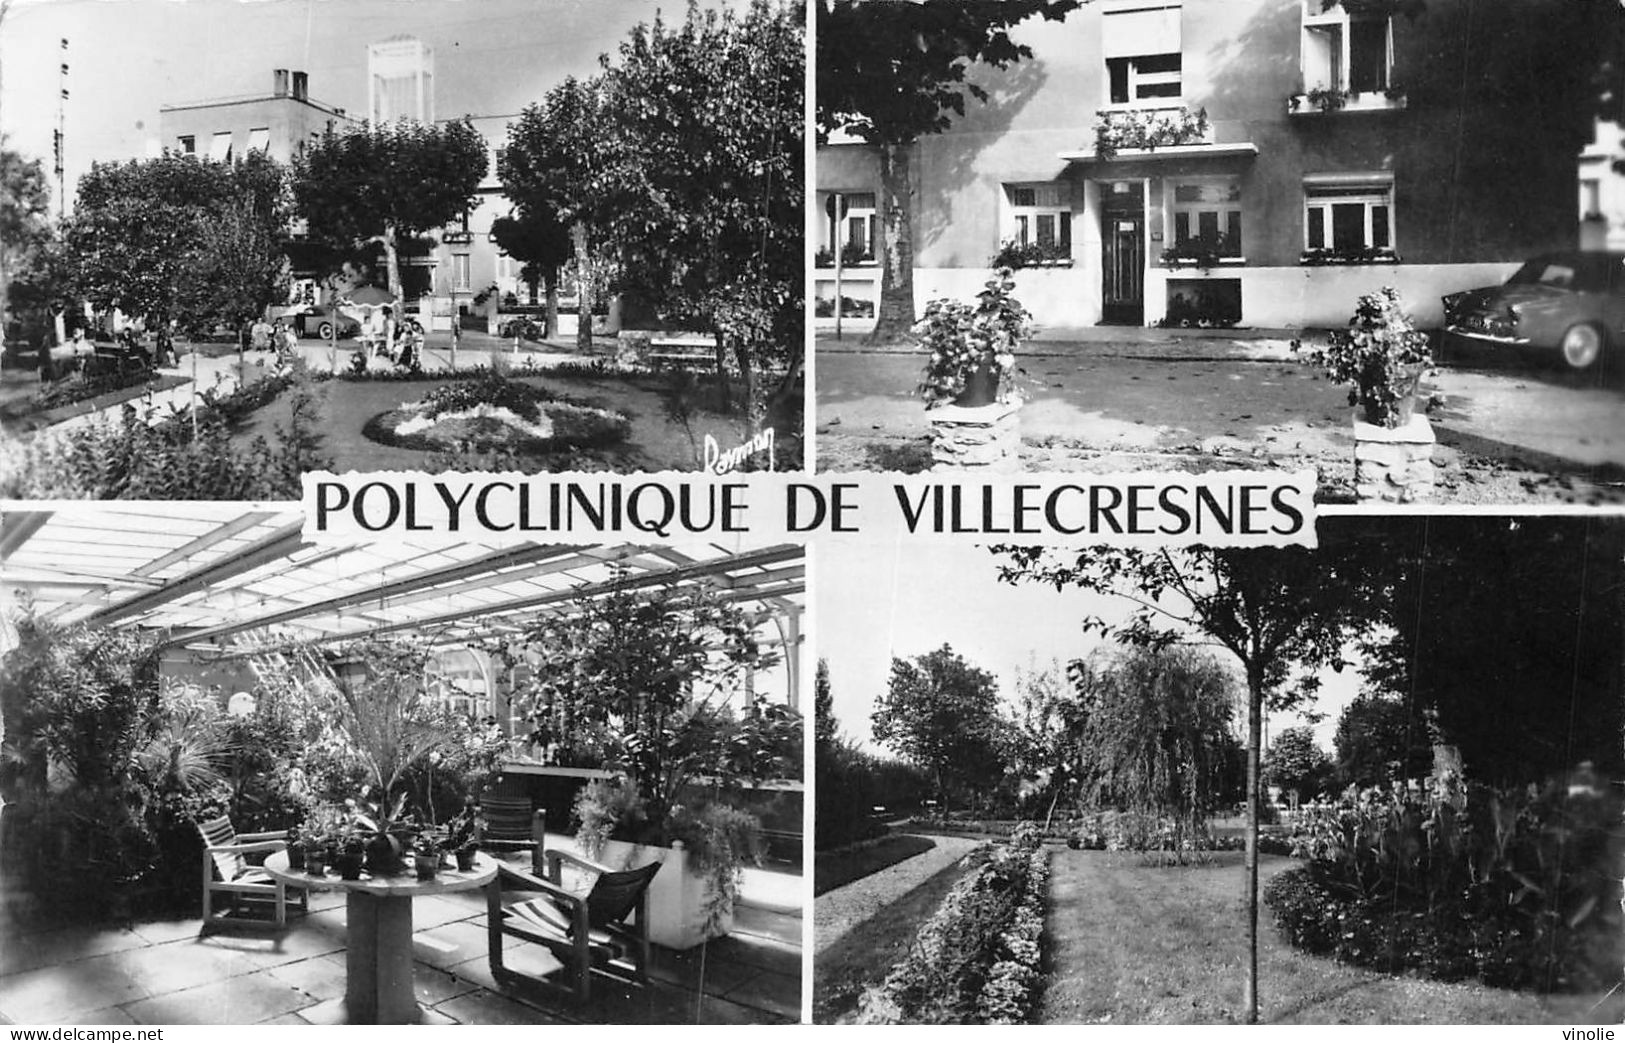 23-P-T BR-4965 : VILLESCRESNES. LA POLYCLINIQUE - Villecresnes